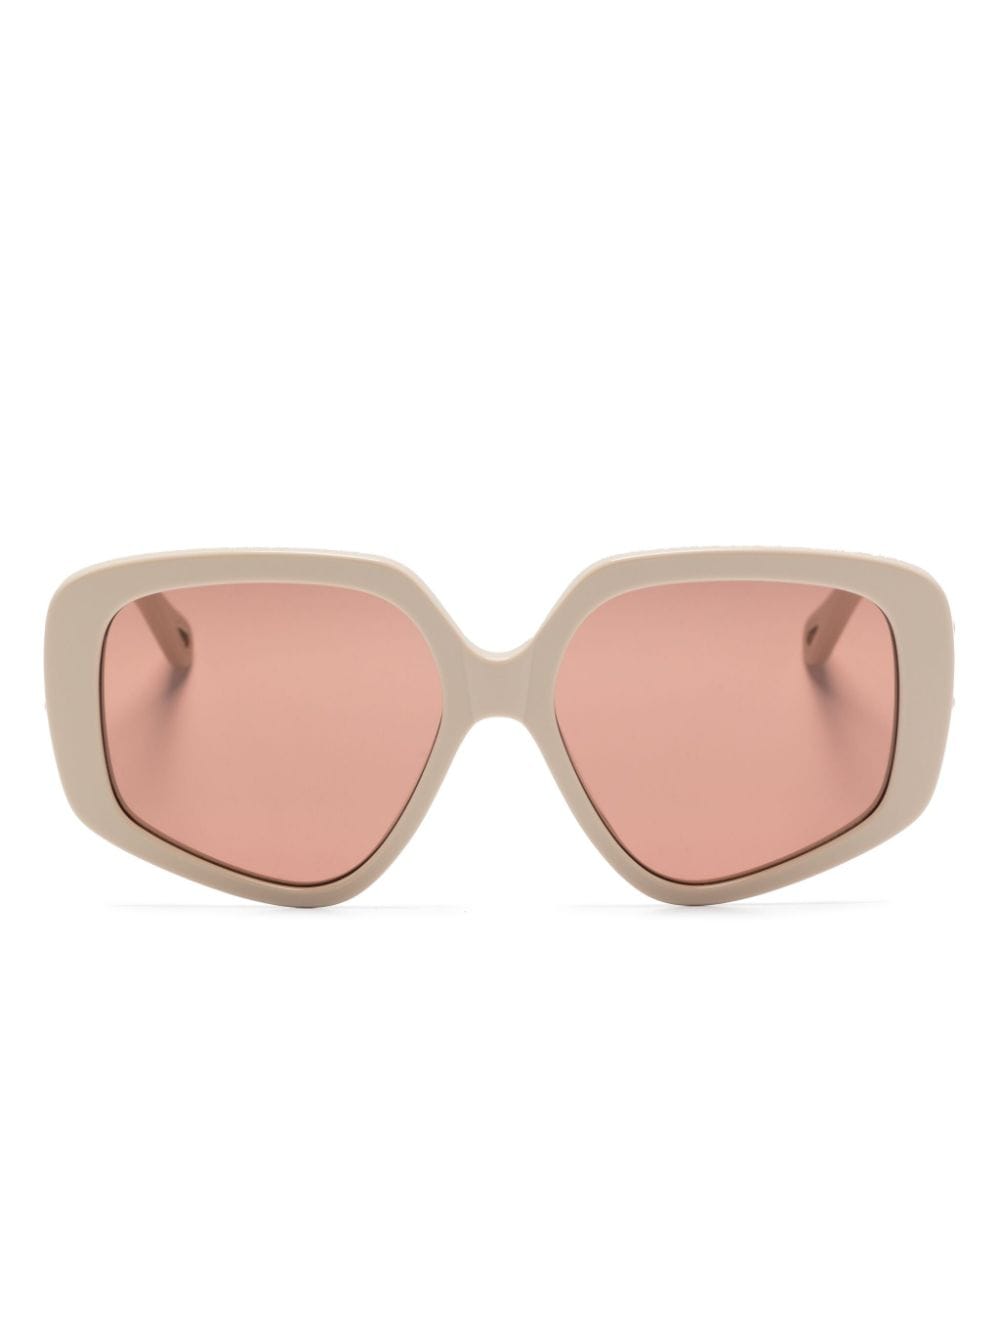 Chloé Eyewear Mony Sonnenbrille mit Oversized-Gestell - Nude von Chloé Eyewear